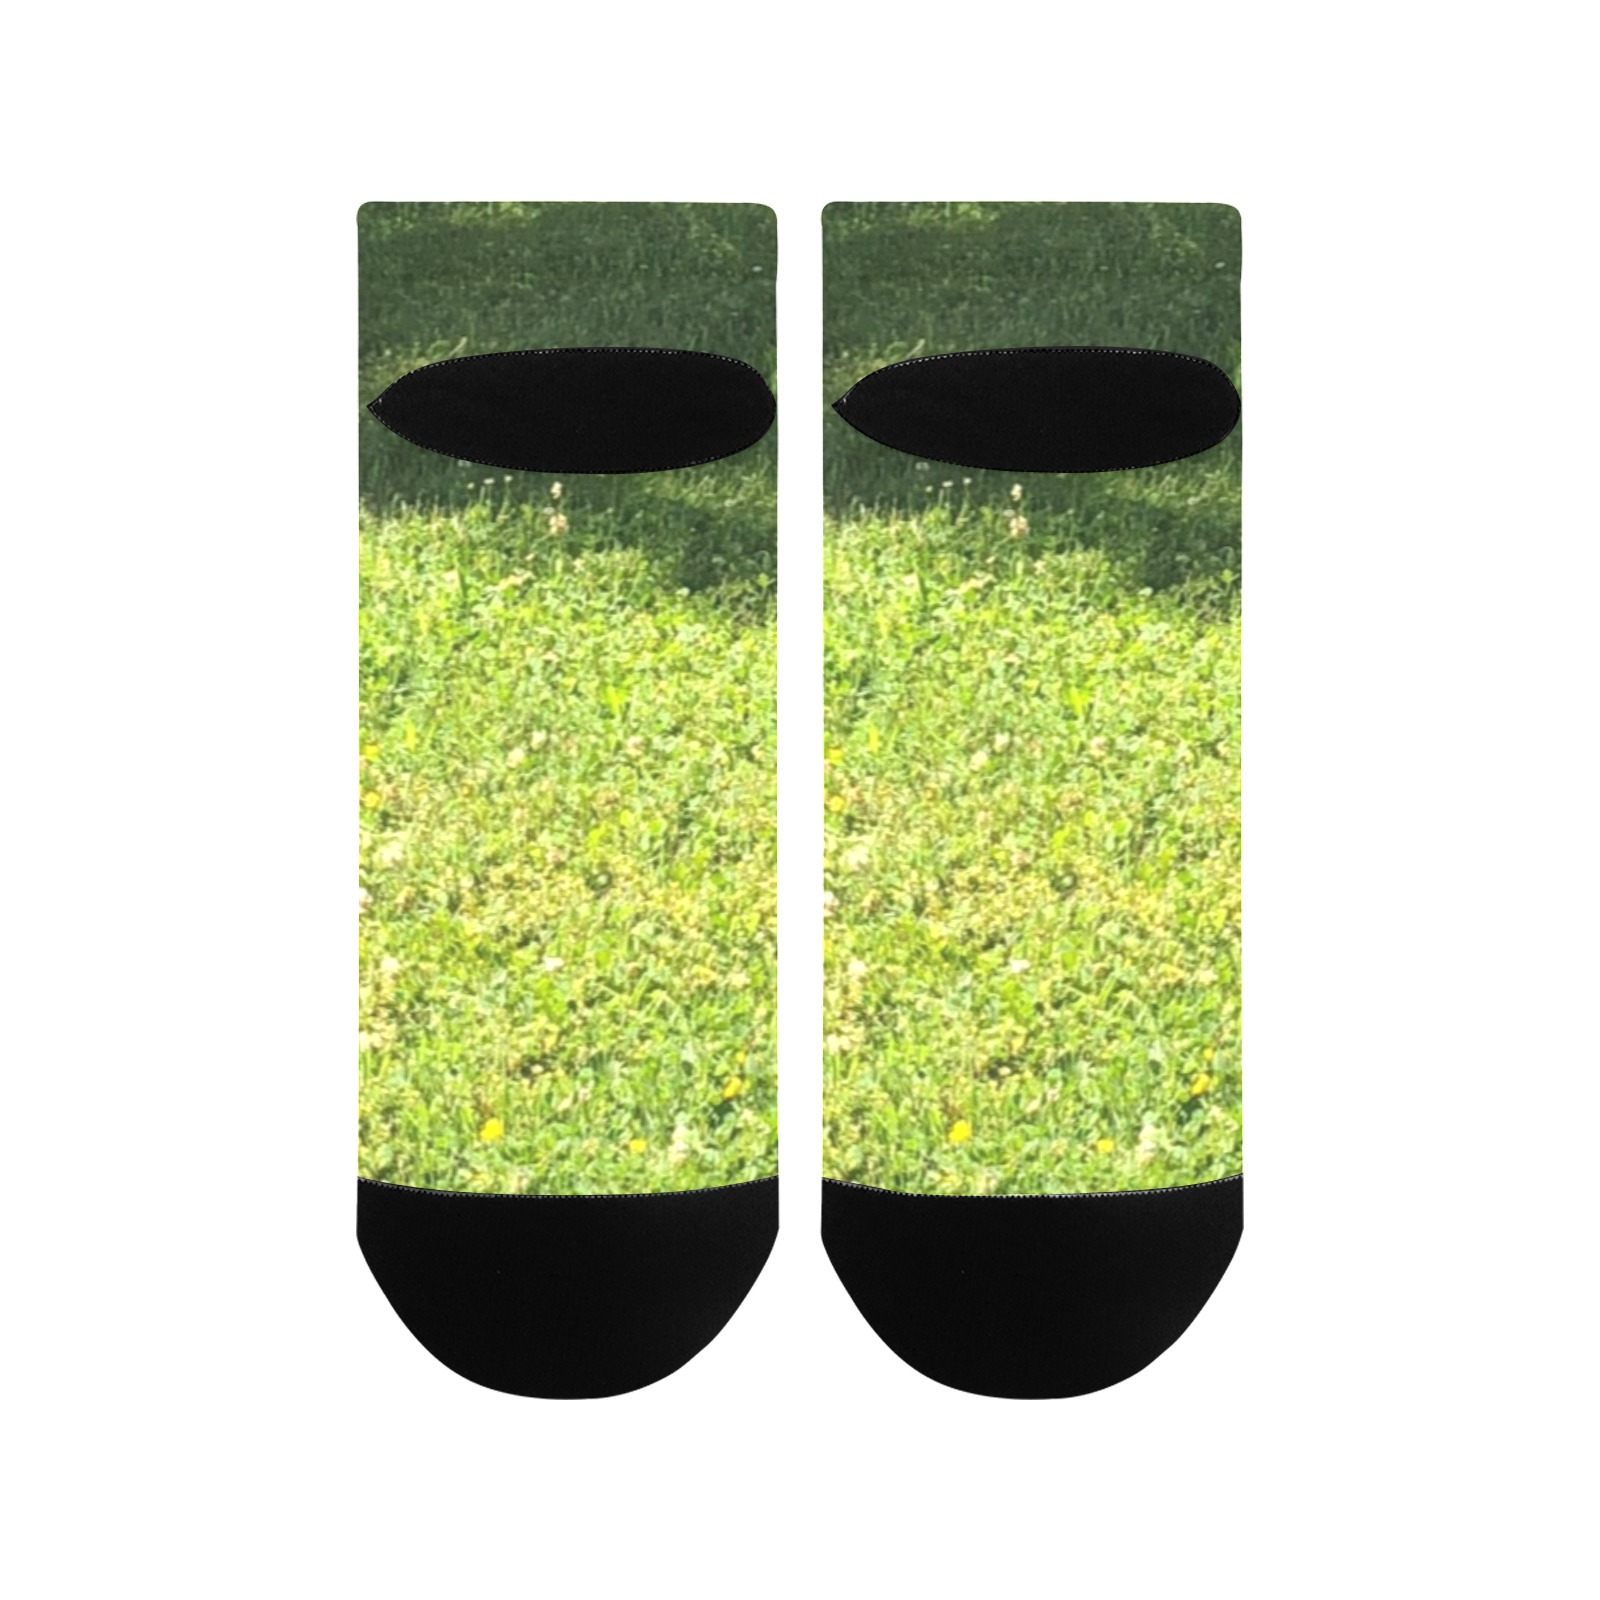 Fresh Grreeen Grass Collection Women's Ankle Socks